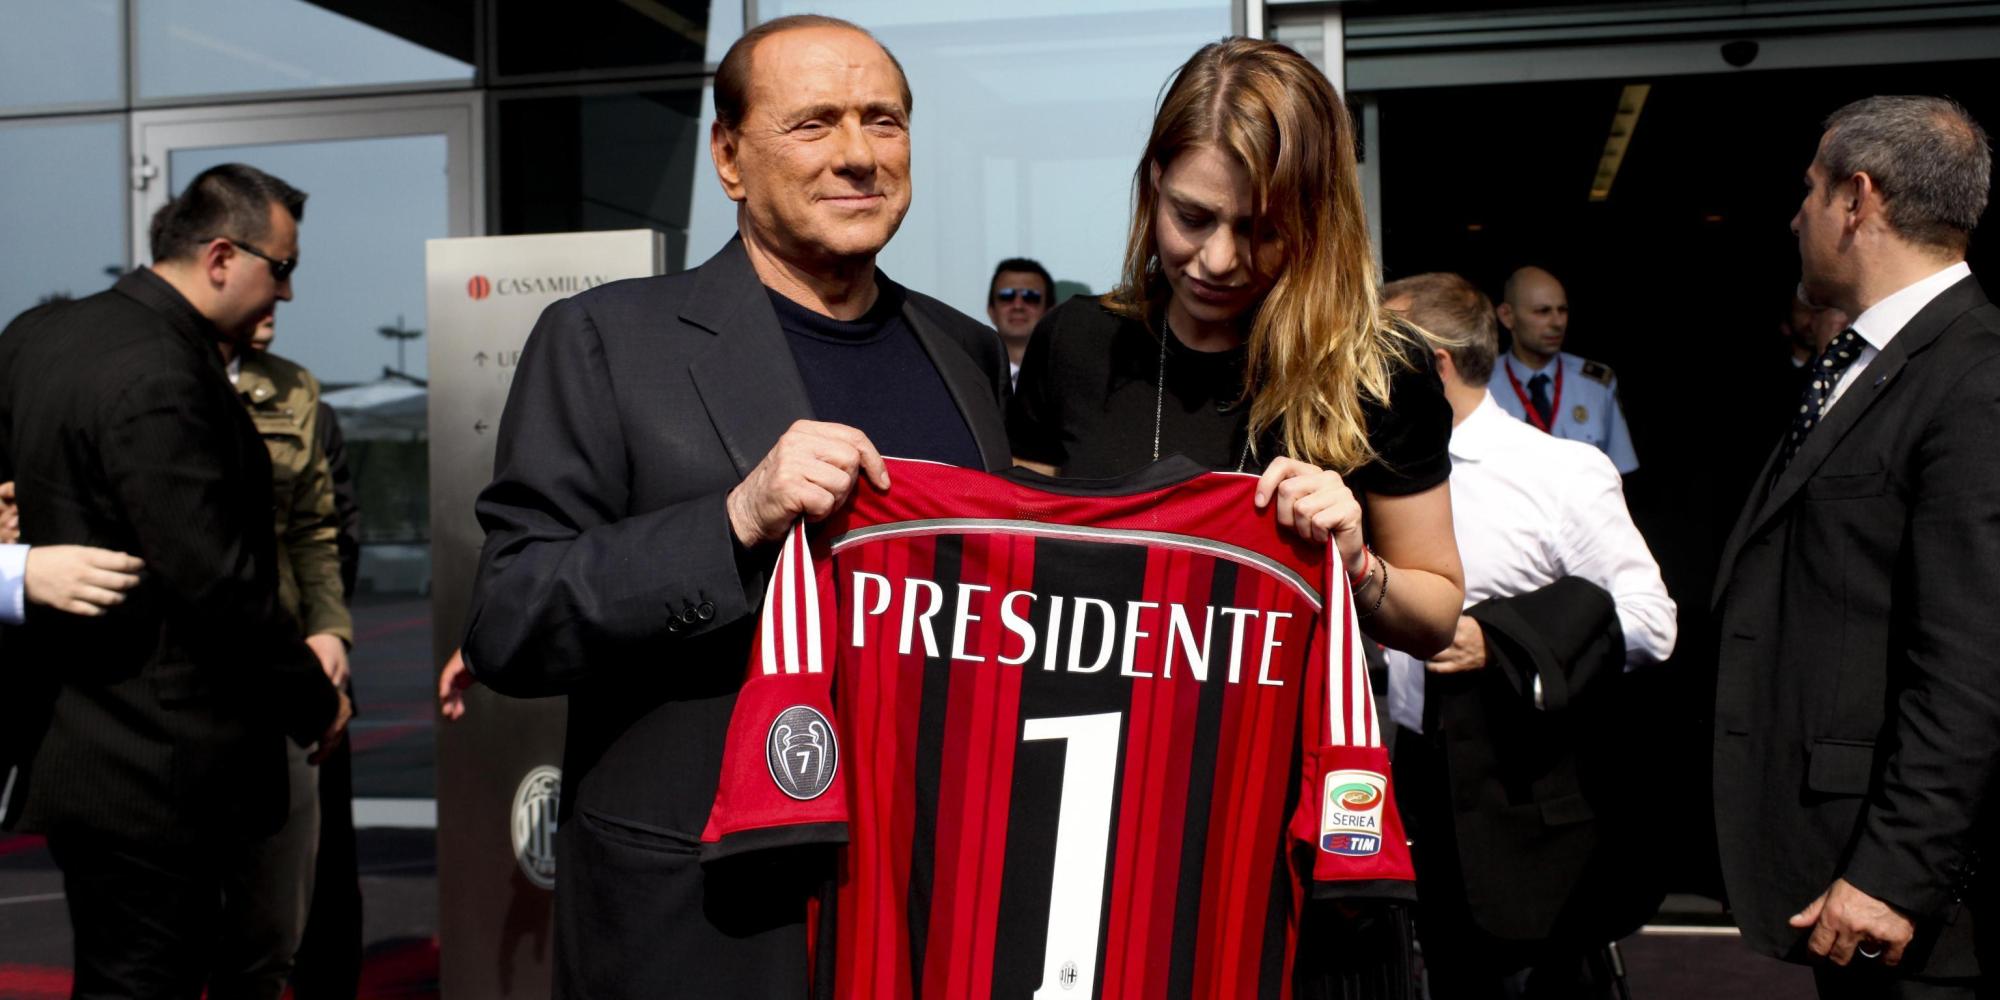 ++ Calcio:Berlusconi, ho visto Inzaghi affamato vittorie ++